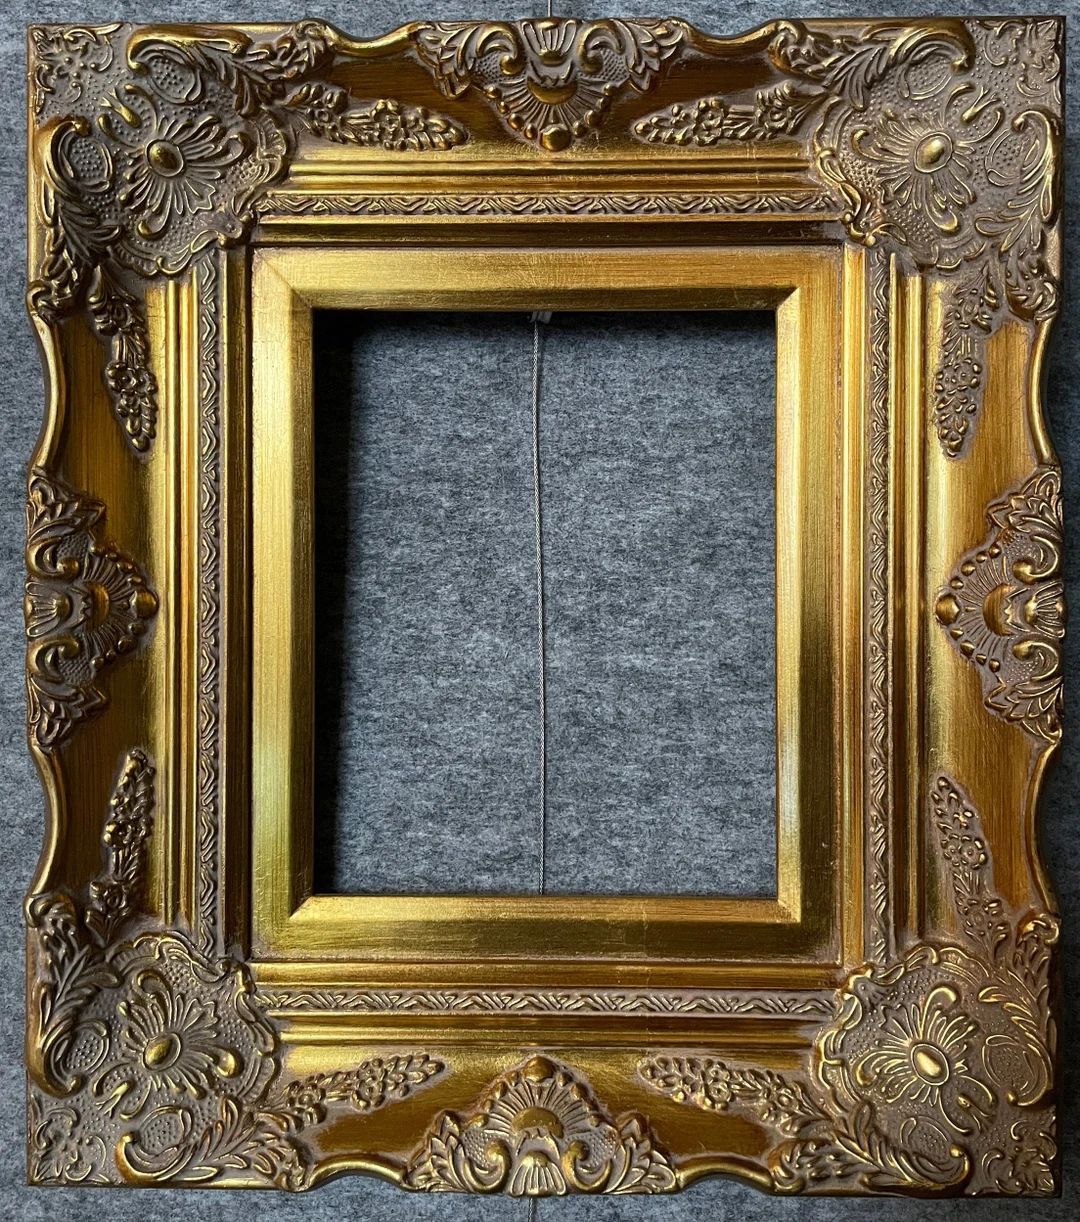 4" gold Ornate Deluxe Antique Frame photo art gallery B9G frames4artcom | Etsy (US)